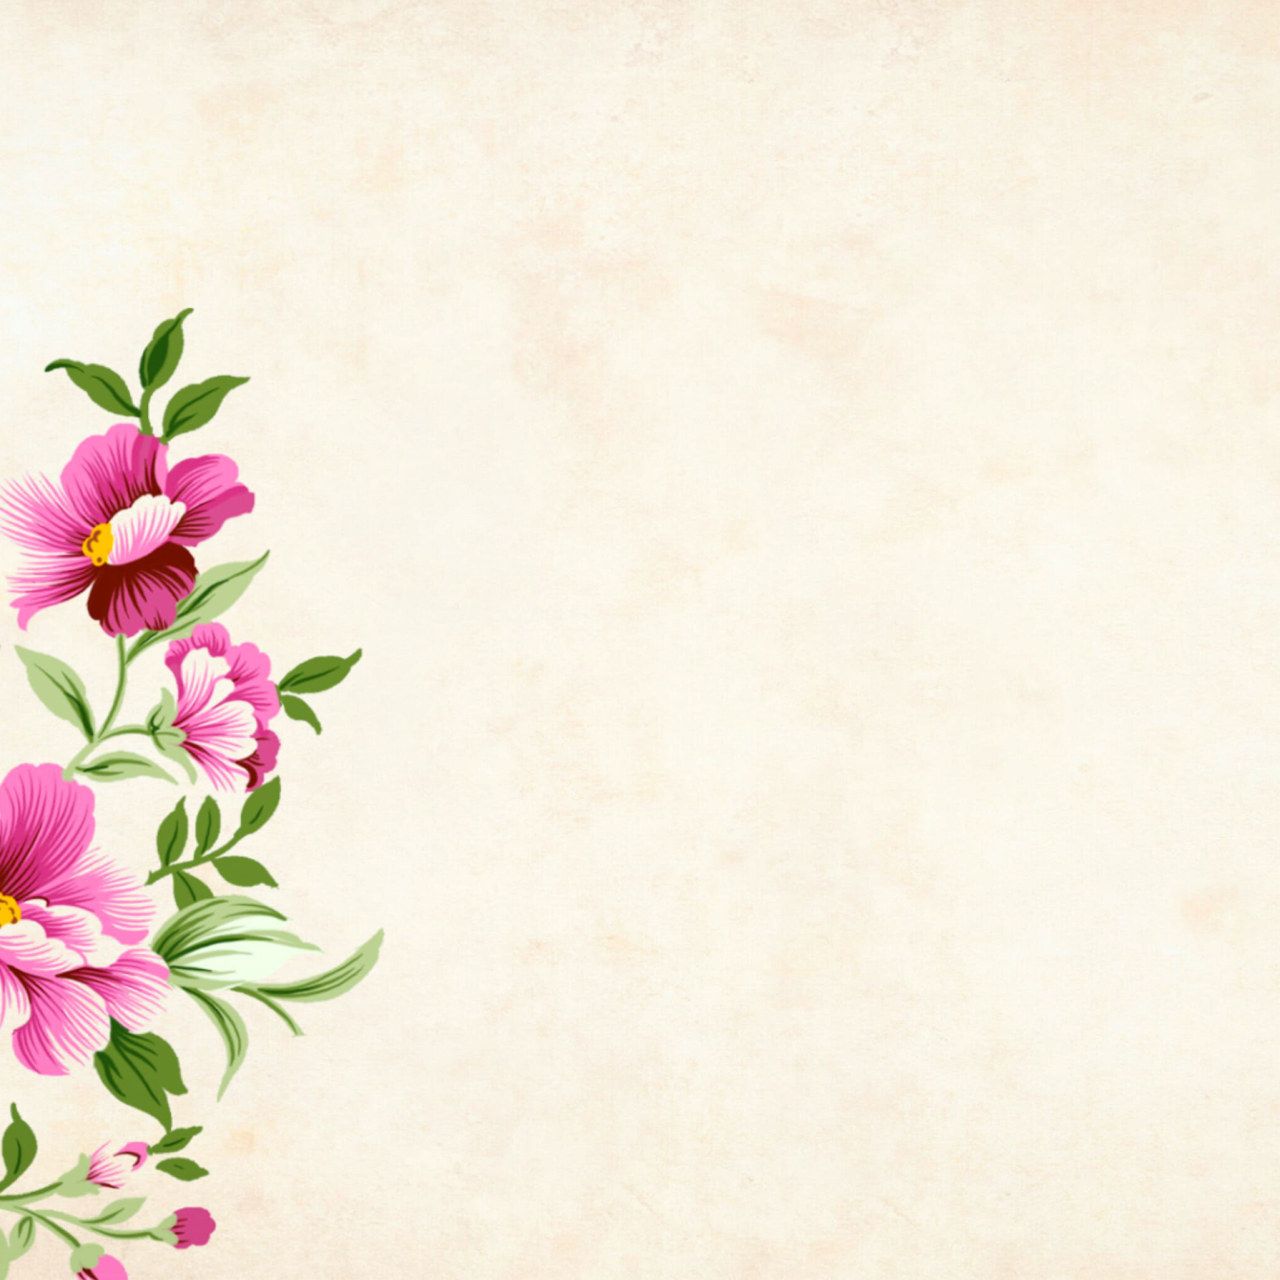 Blooming flowers wallpaper, background, floral, border, garden frame, vintage • Wallpaper For You HD Wallpaper For Desktop & Mobile